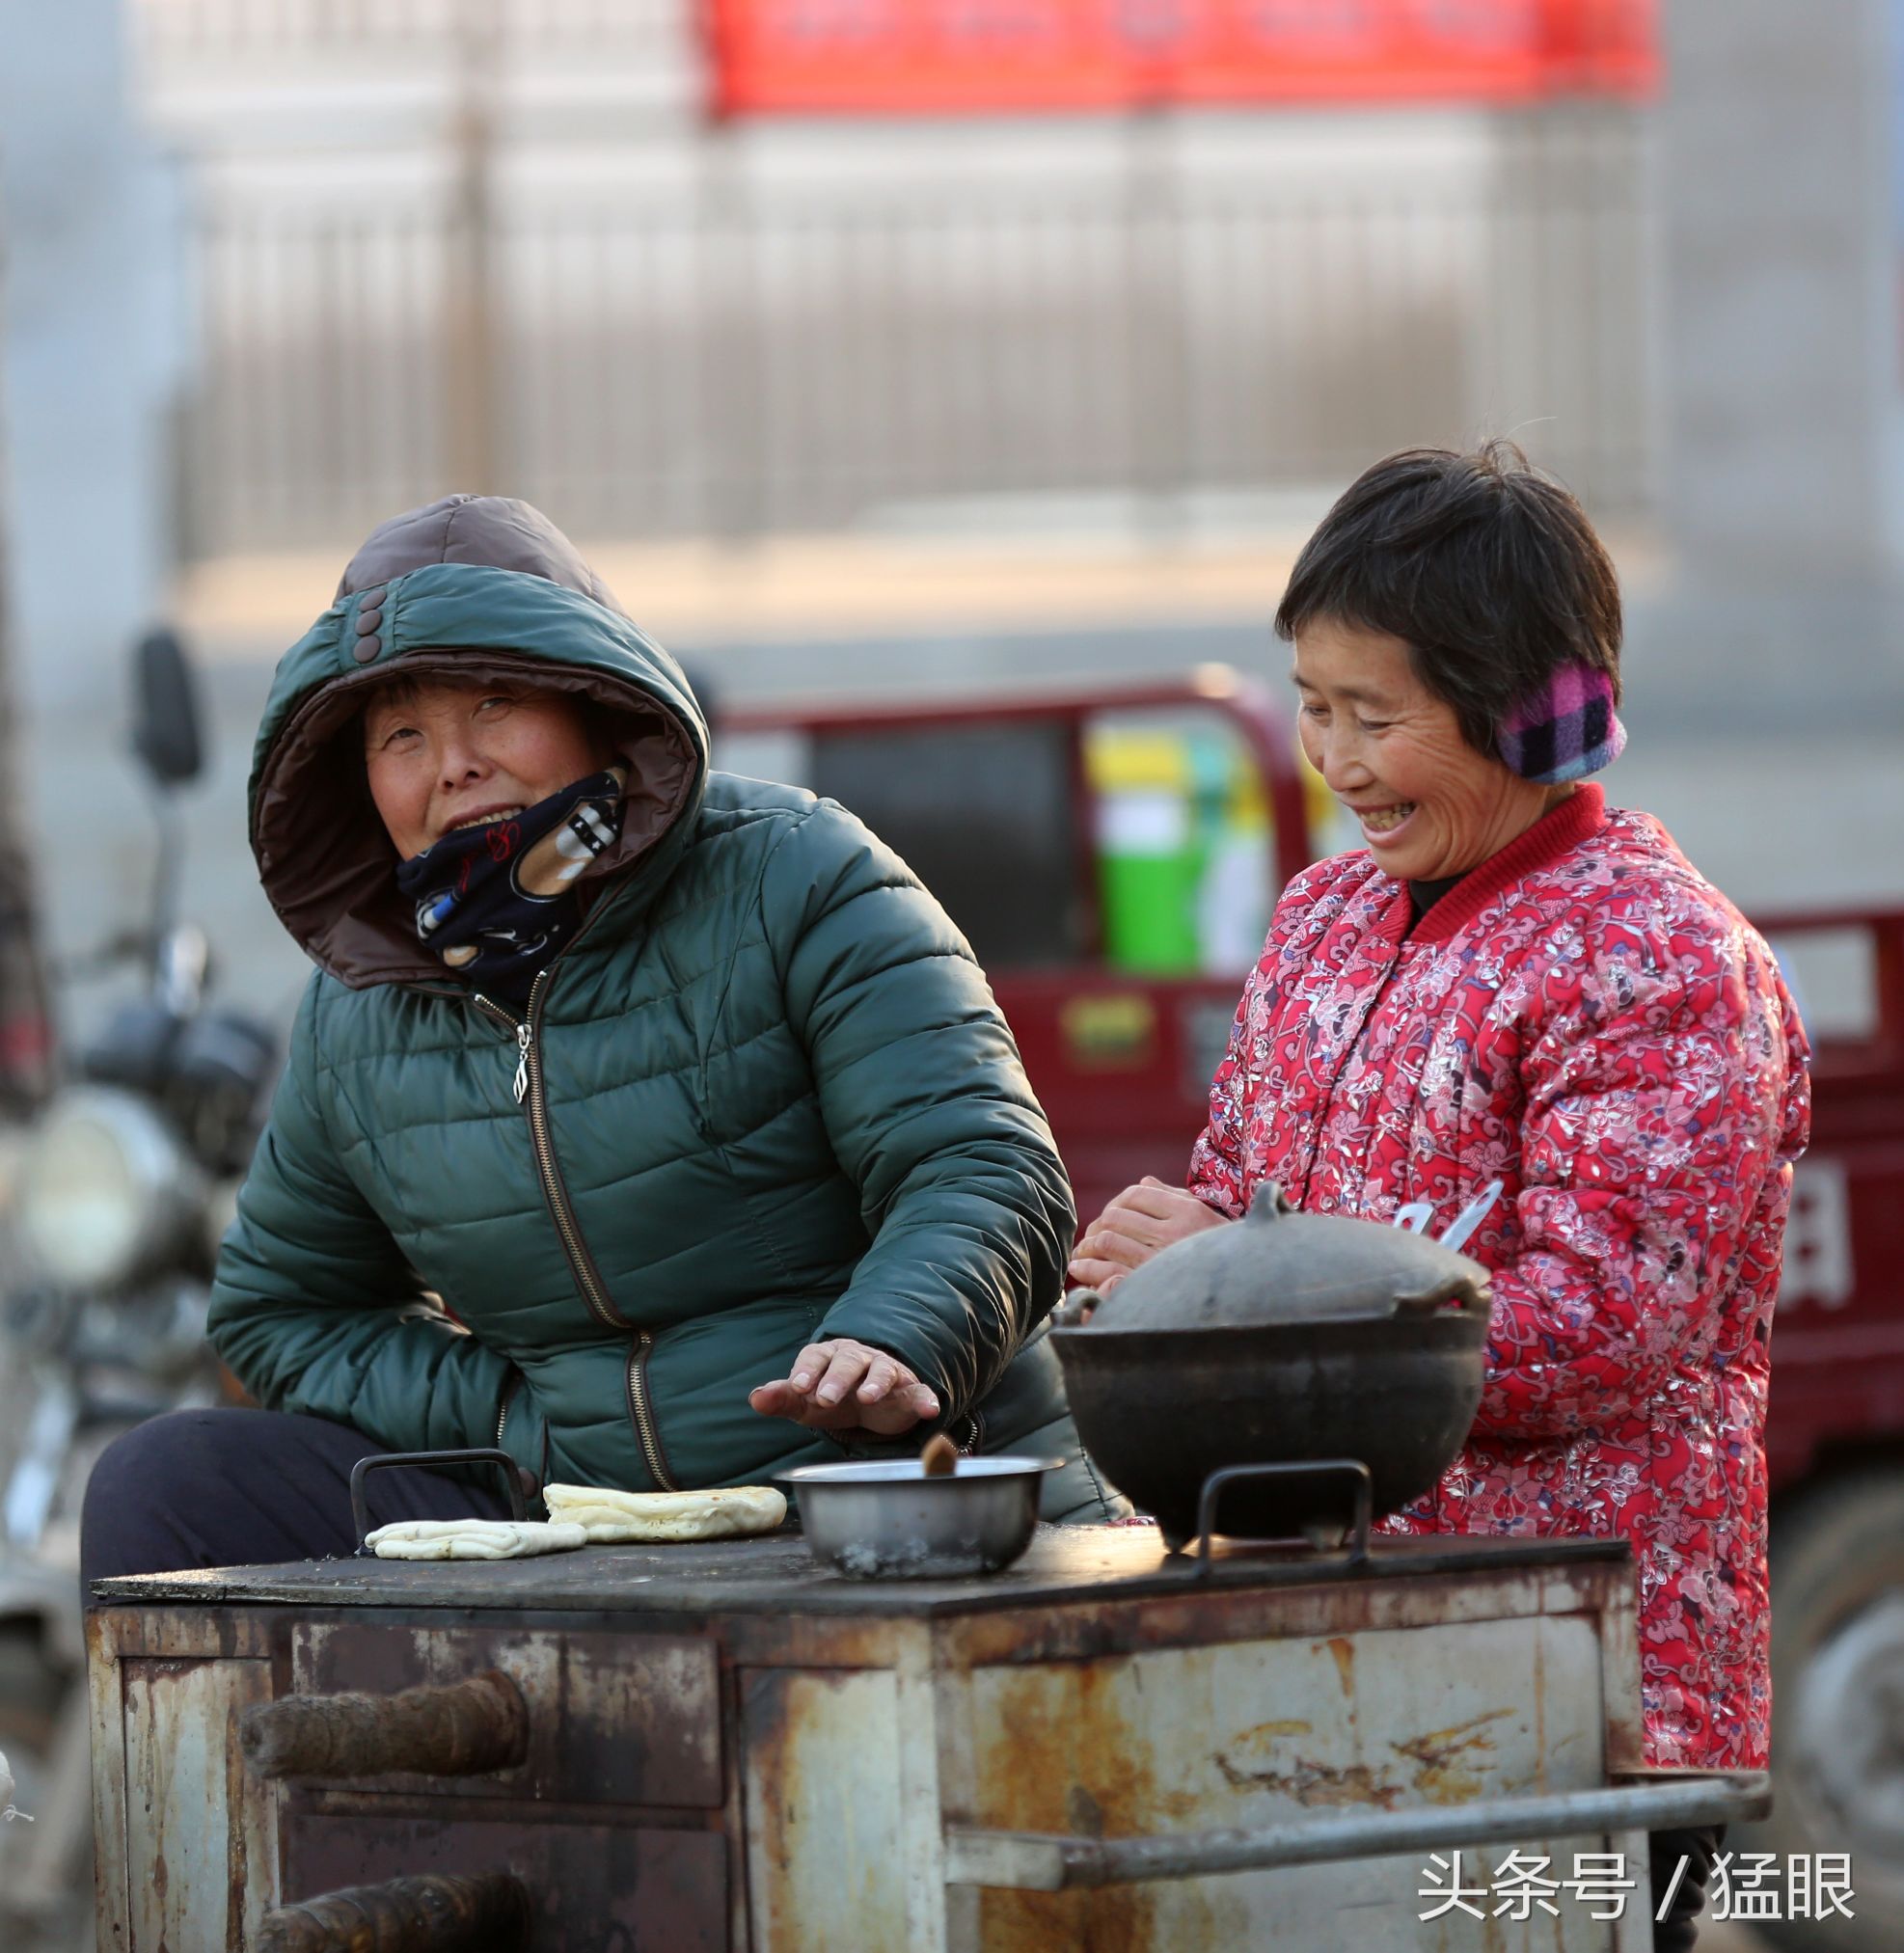 郑州街头卖传统火烧的小摊排起长队 人多时一饼难求-大河新闻